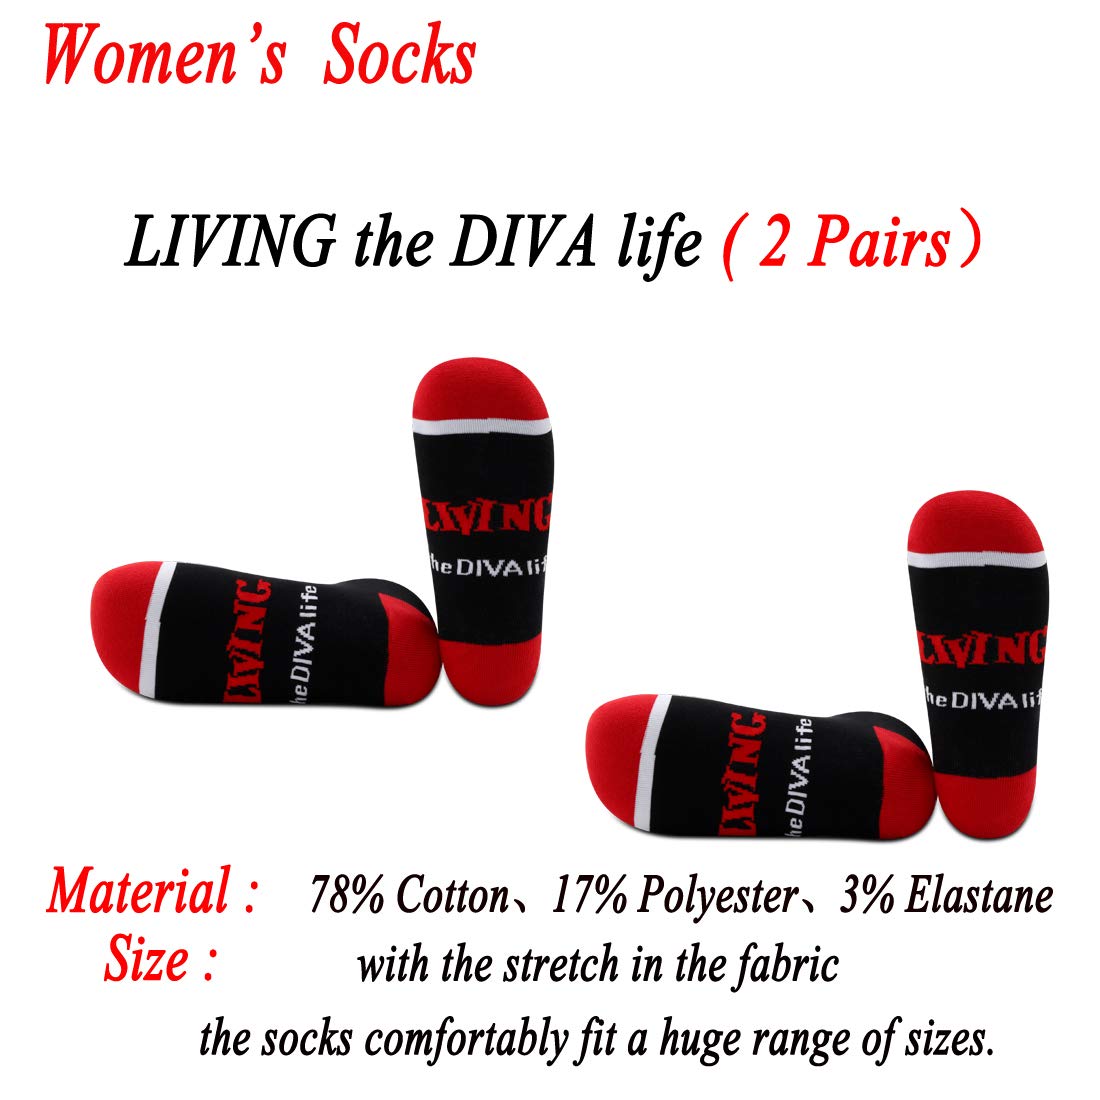 JXGZSO 2 Pairs Sorority Socks Black and Red Socks Sorority Sister Gift Living the Diva Life Socks Sorority Gift (LIVING the DIVA life)